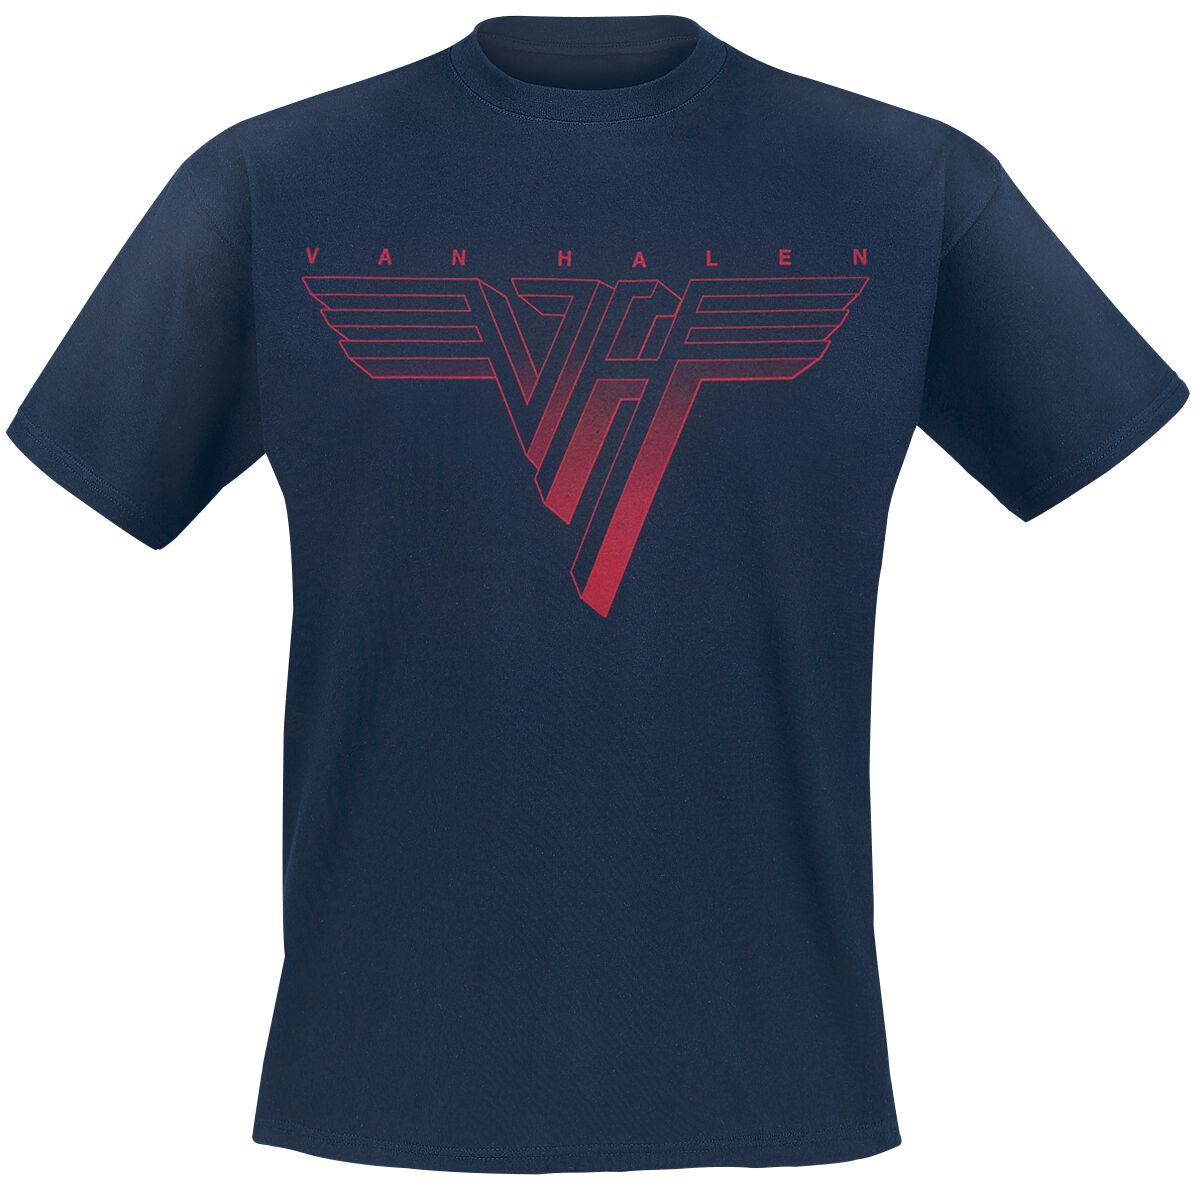 Van Halen T-Shirt - Classic Red Logo - S bis 3XL - für Männer - Größe M - navy  - Lizenziertes Merchandise!